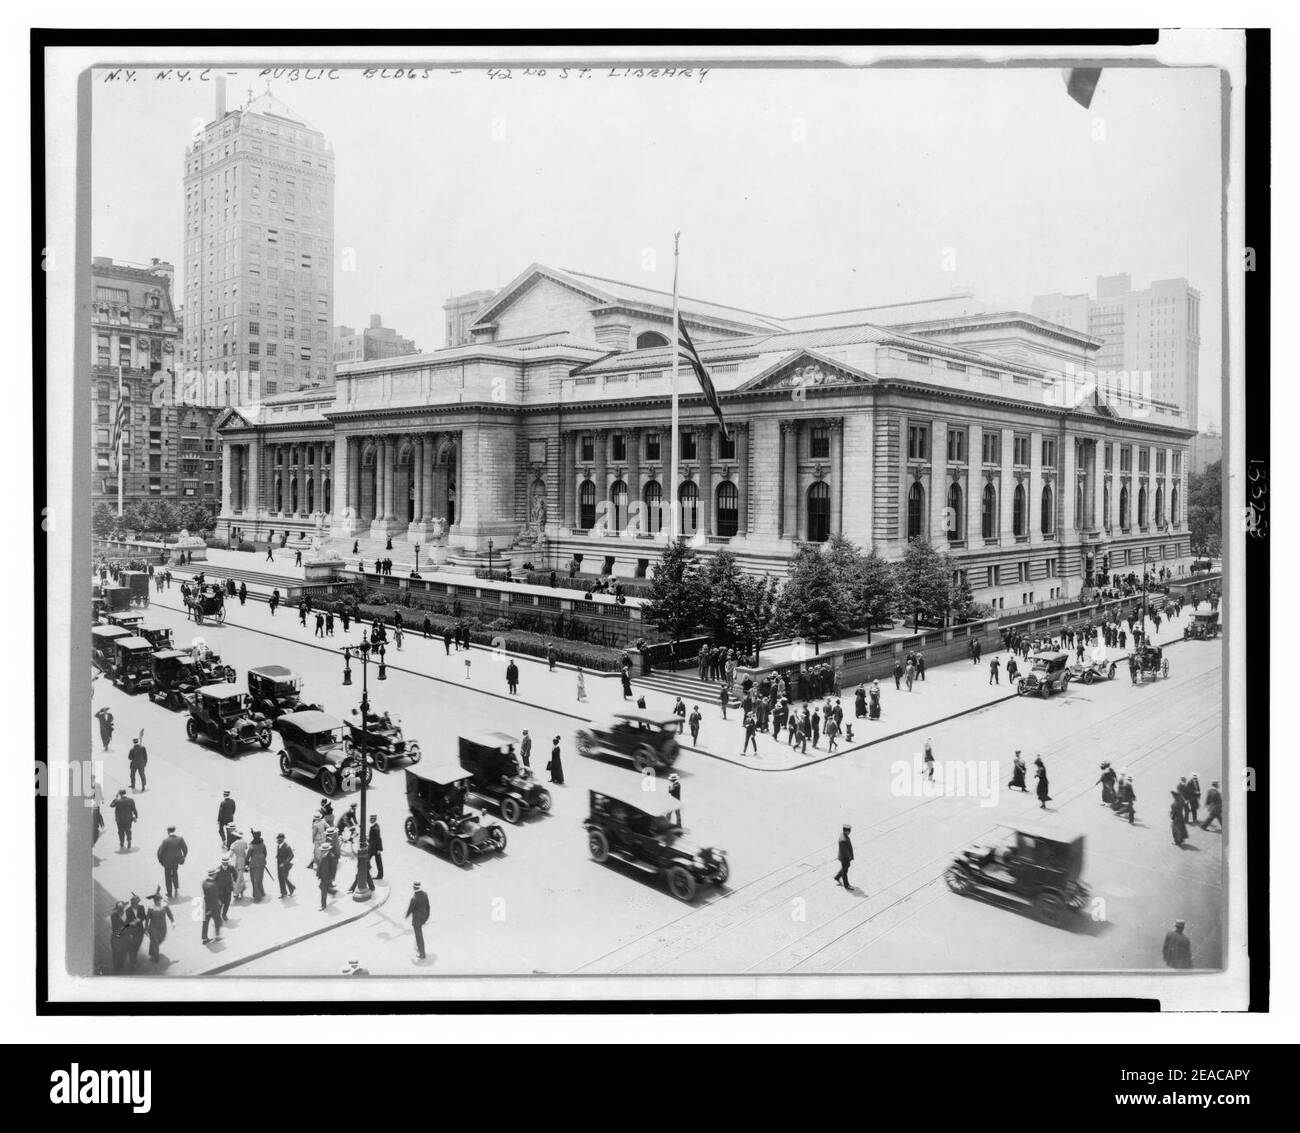 New York Public Library vom Gebäude auf der Kreuzung von E. 42nd Street und Fifth Avenue gesehen, Anzeigen vorne und Osten Fassaden, sowie Automobil- und Fußgängerverkehr Stockfoto